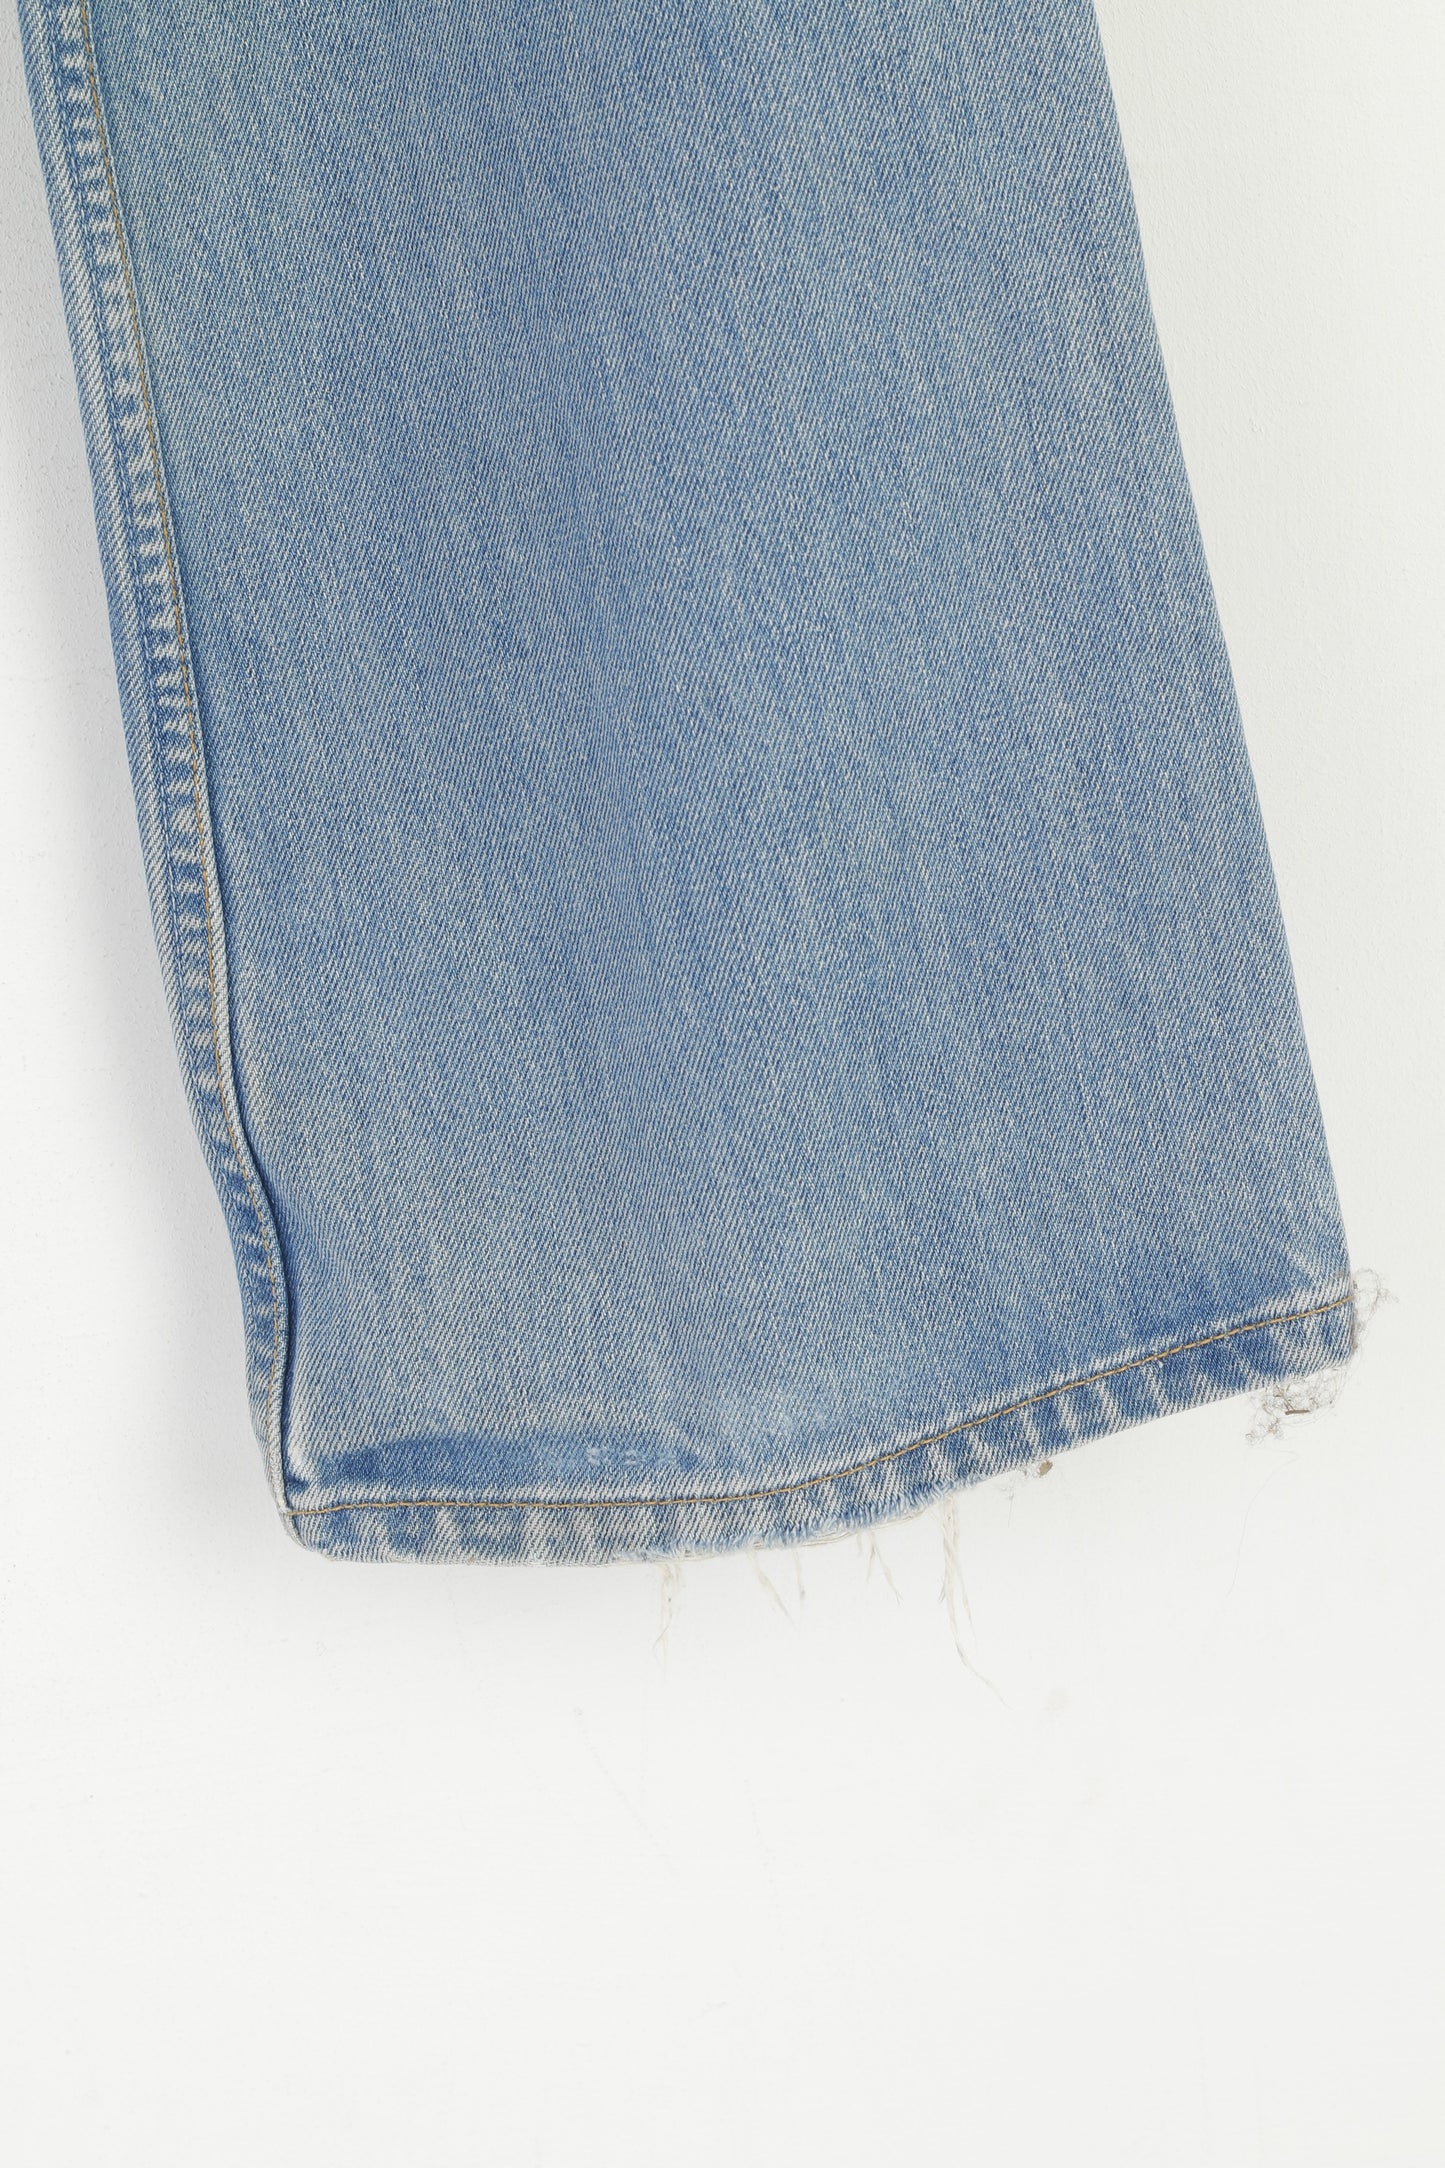 Levi Strauss & CO. Men 33 Jeans Trousers Blue Vintage Cotton Denim 507 Levi's Pants